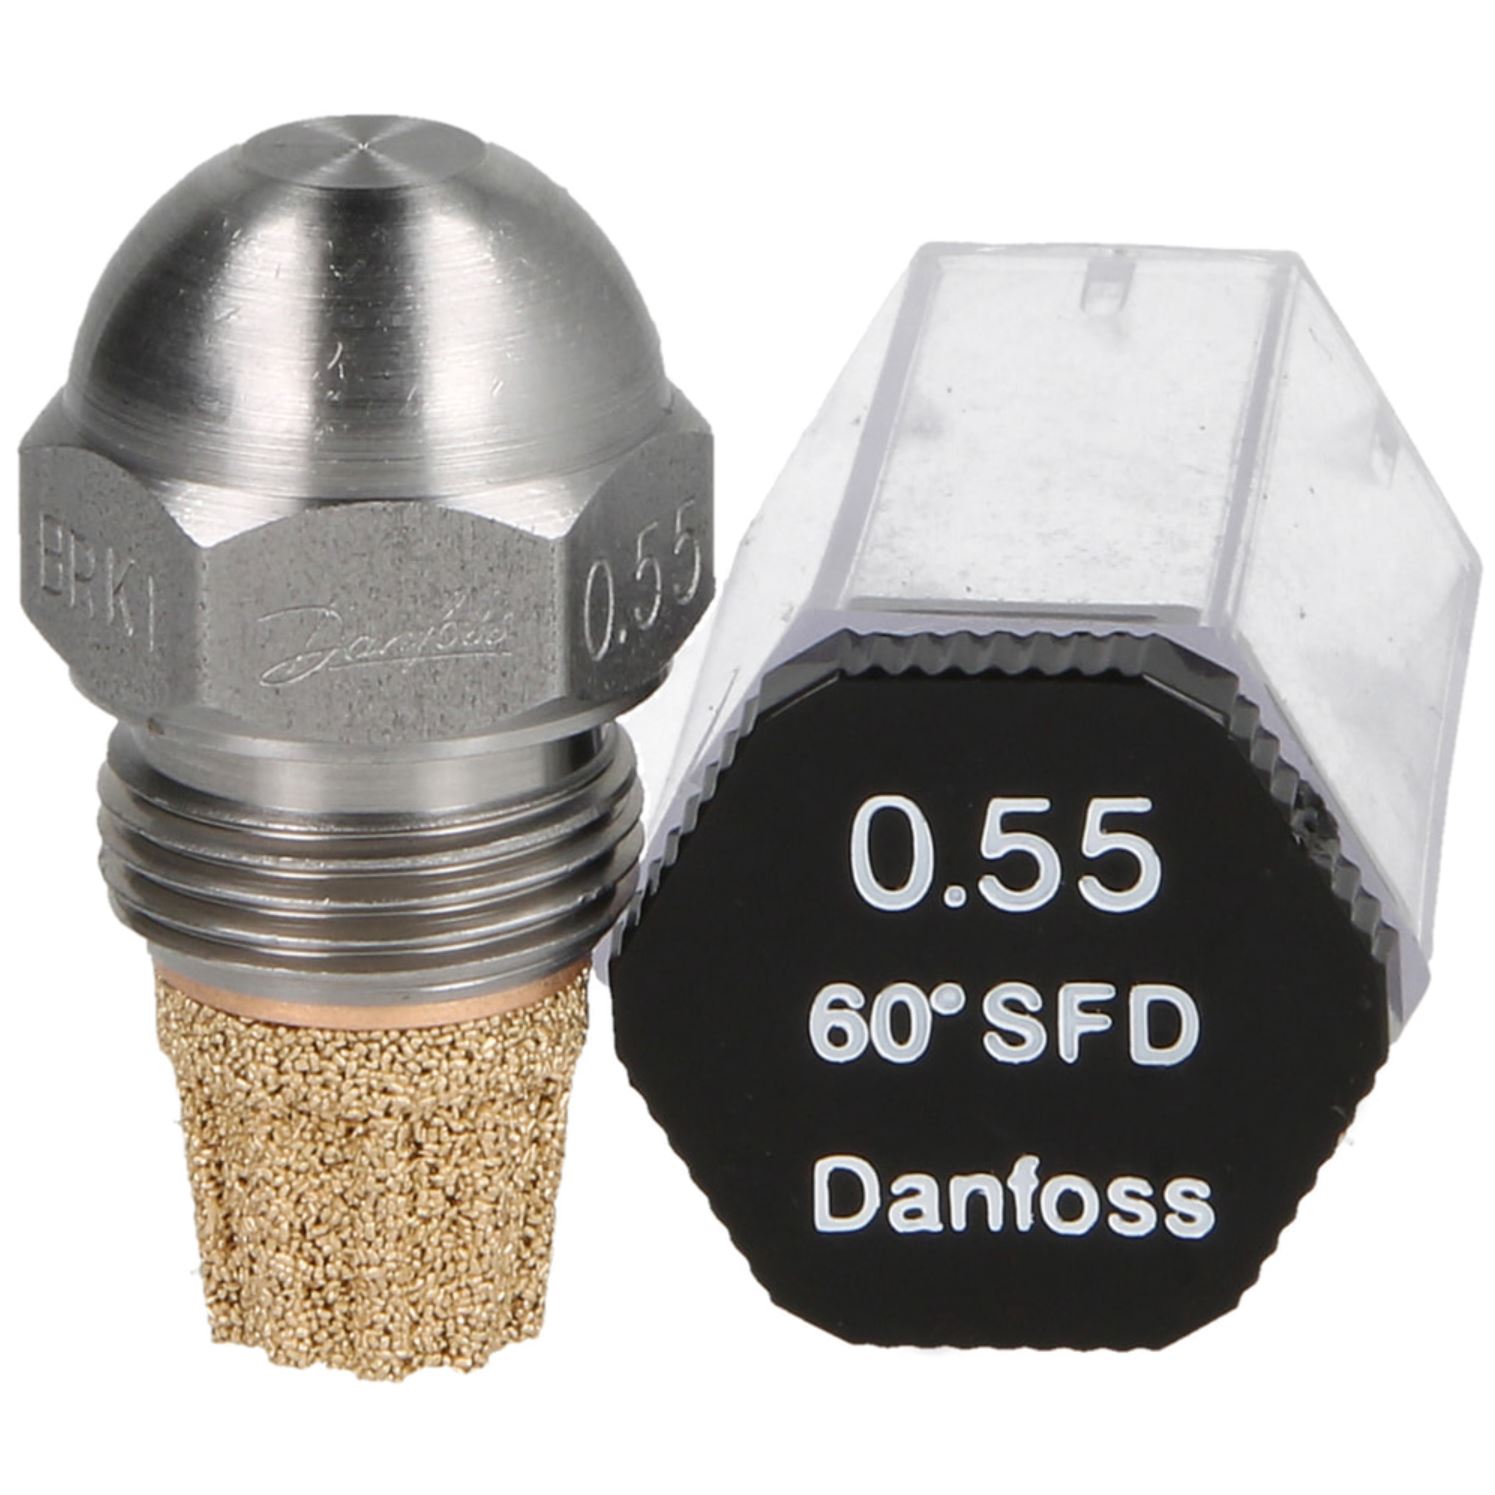 Danfoss-Öldüse 0,55 60°SF-D